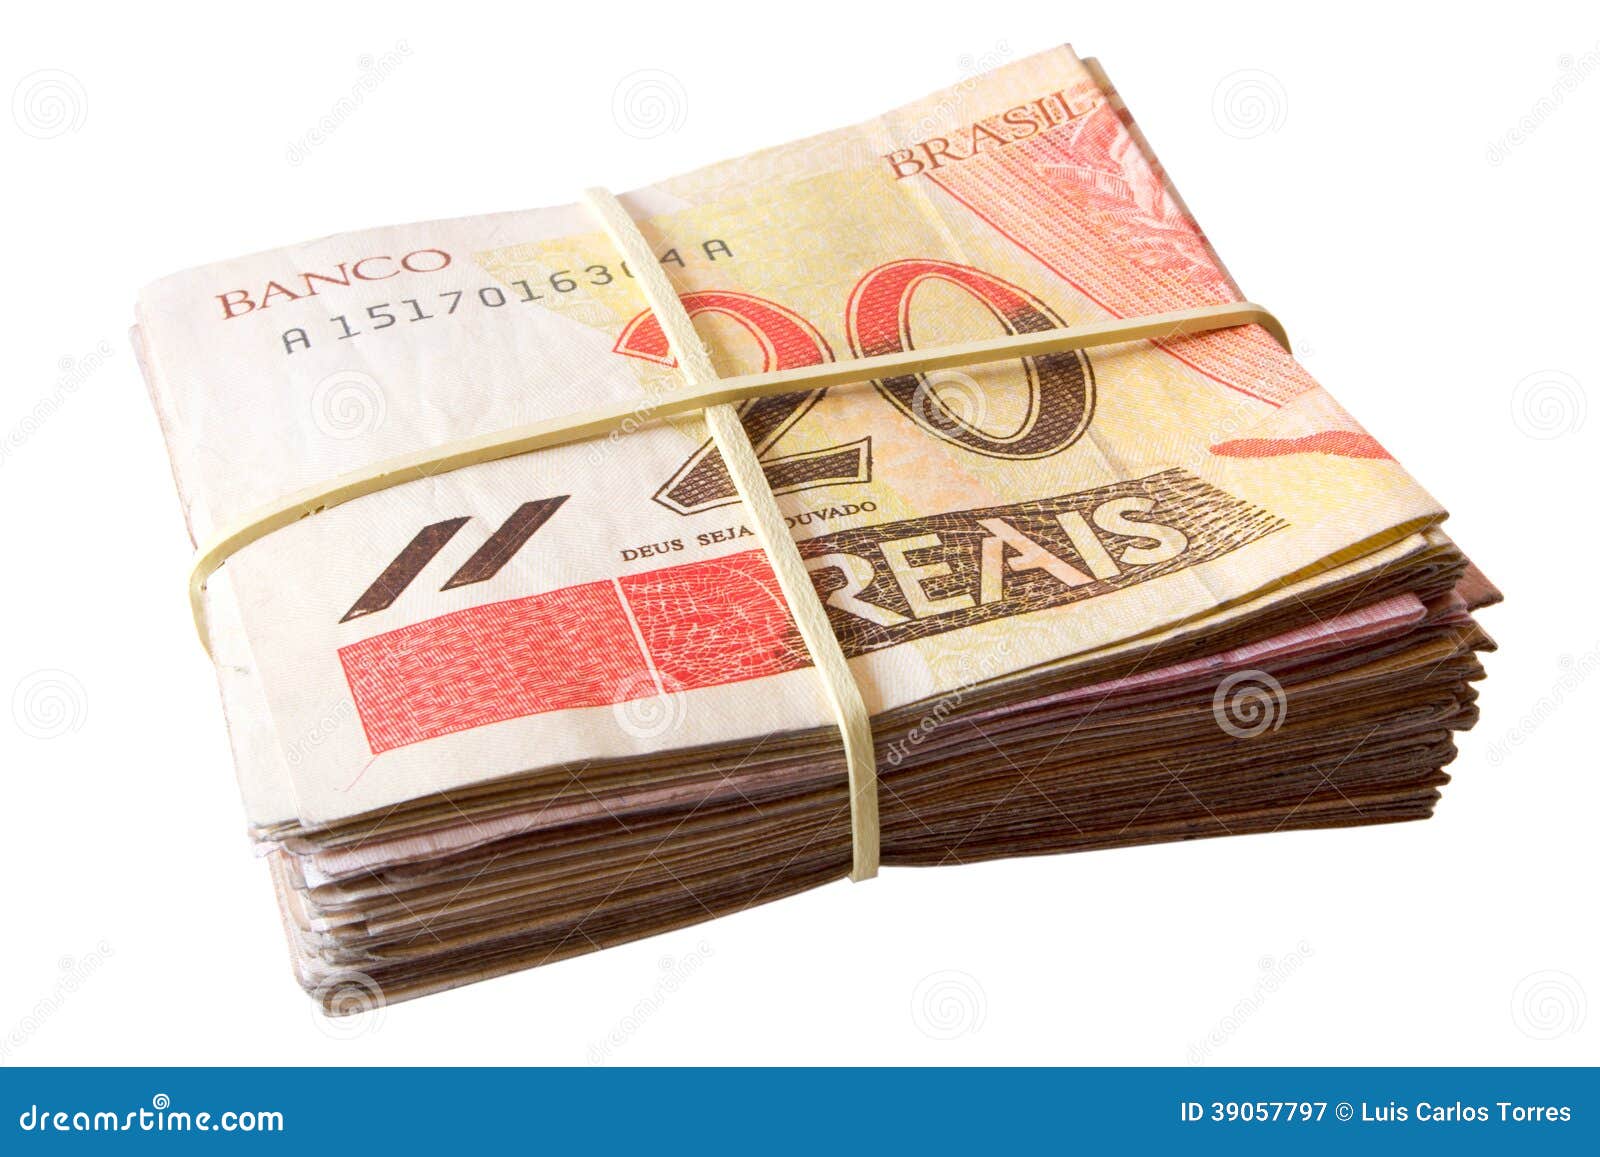 twenty reais - brazilian money